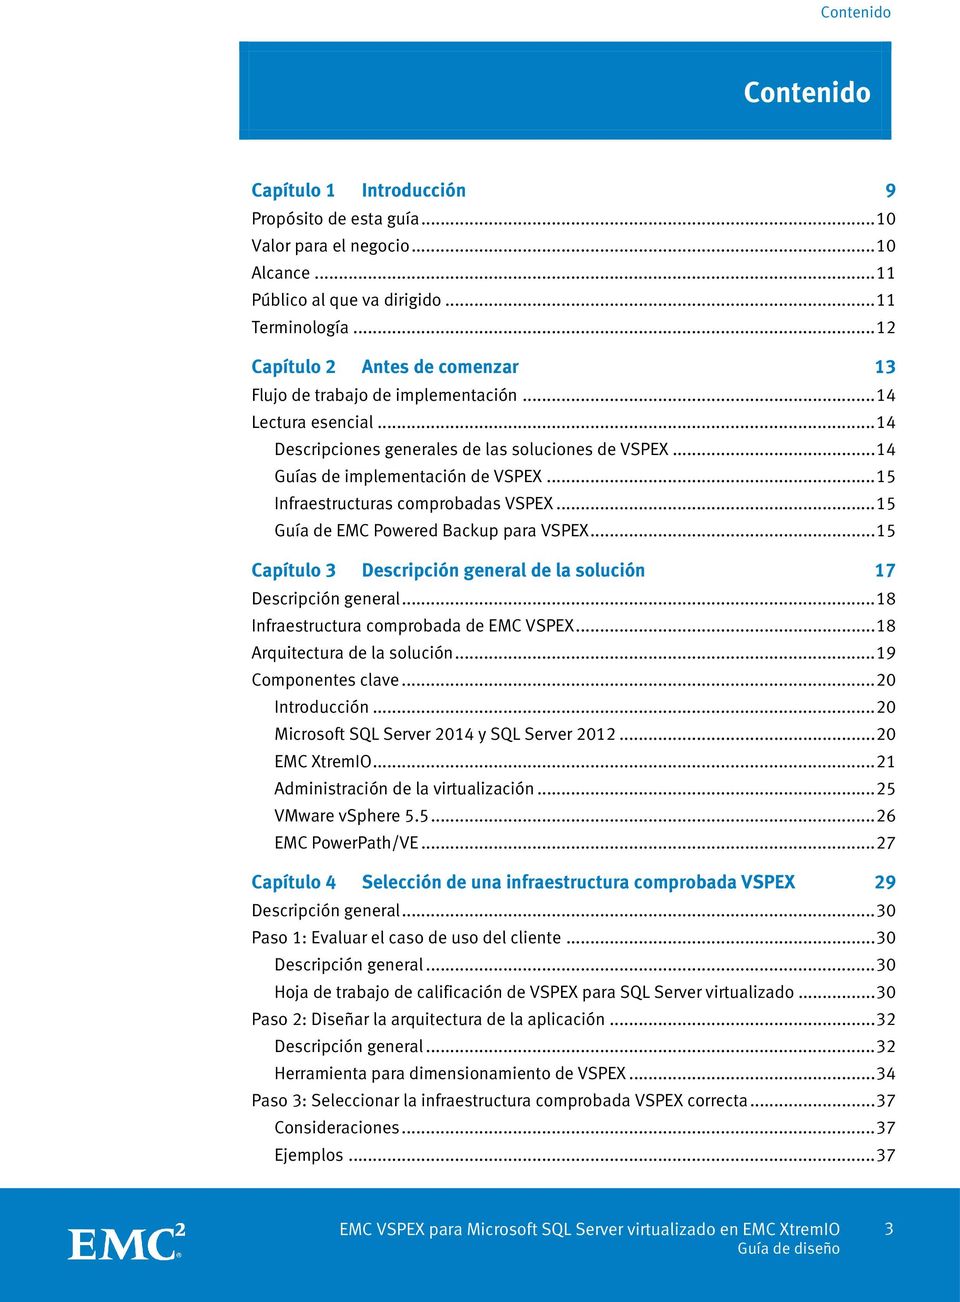 .. 15 Infraestructuras comprobadas VSPEX... 15 Guía de EMC Powered Backup para VSPEX... 15 Capítulo 3 Descripción general de la solución 17 Descripción general.